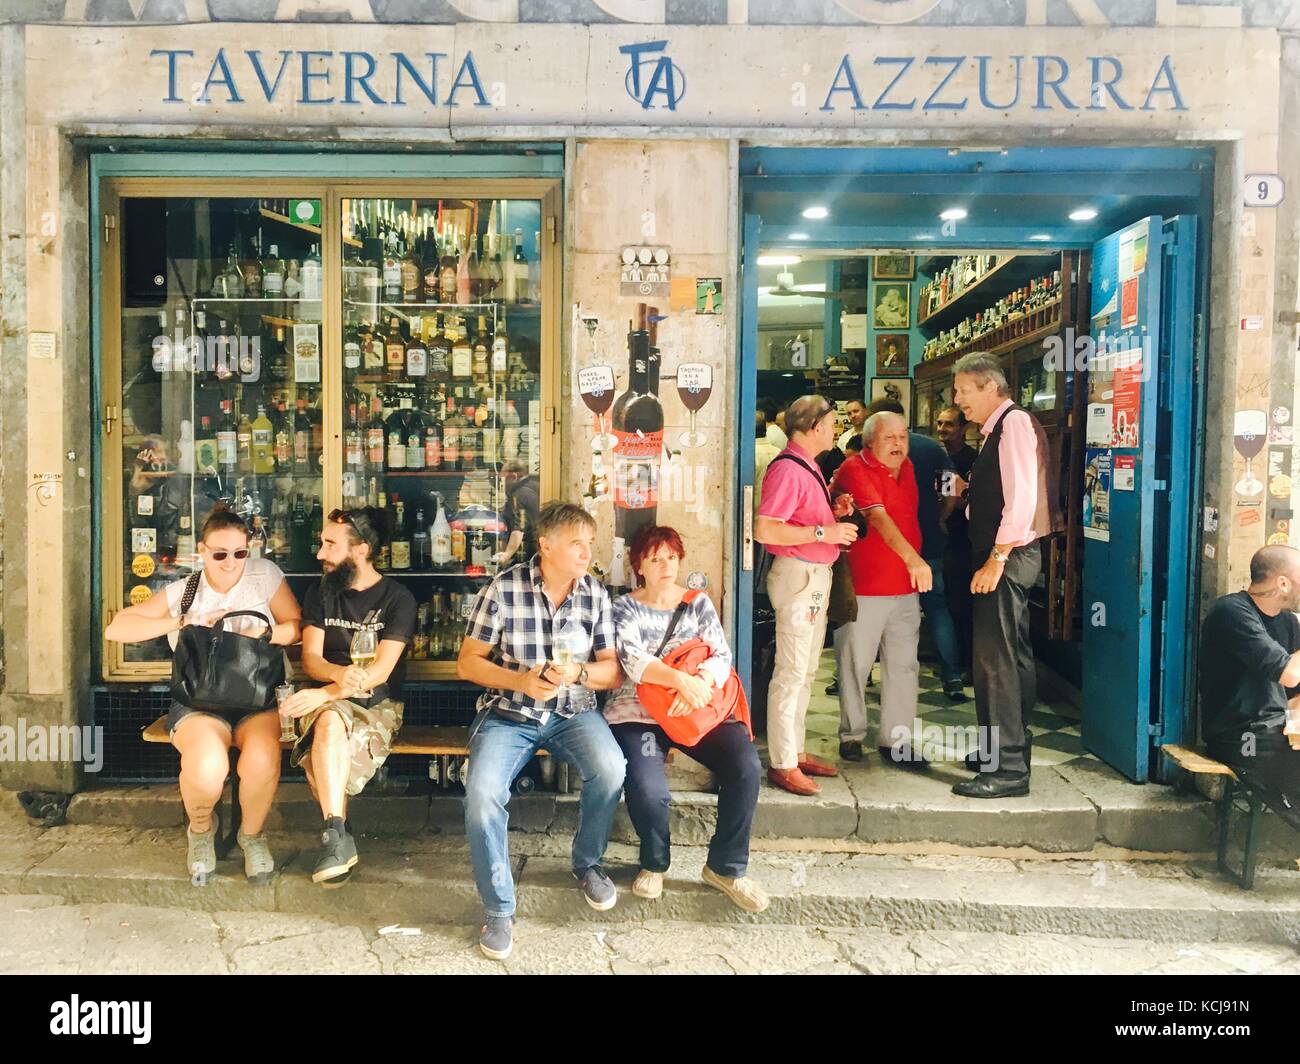 Taverna Azzurra, Palermo, Sicily Stock Photo